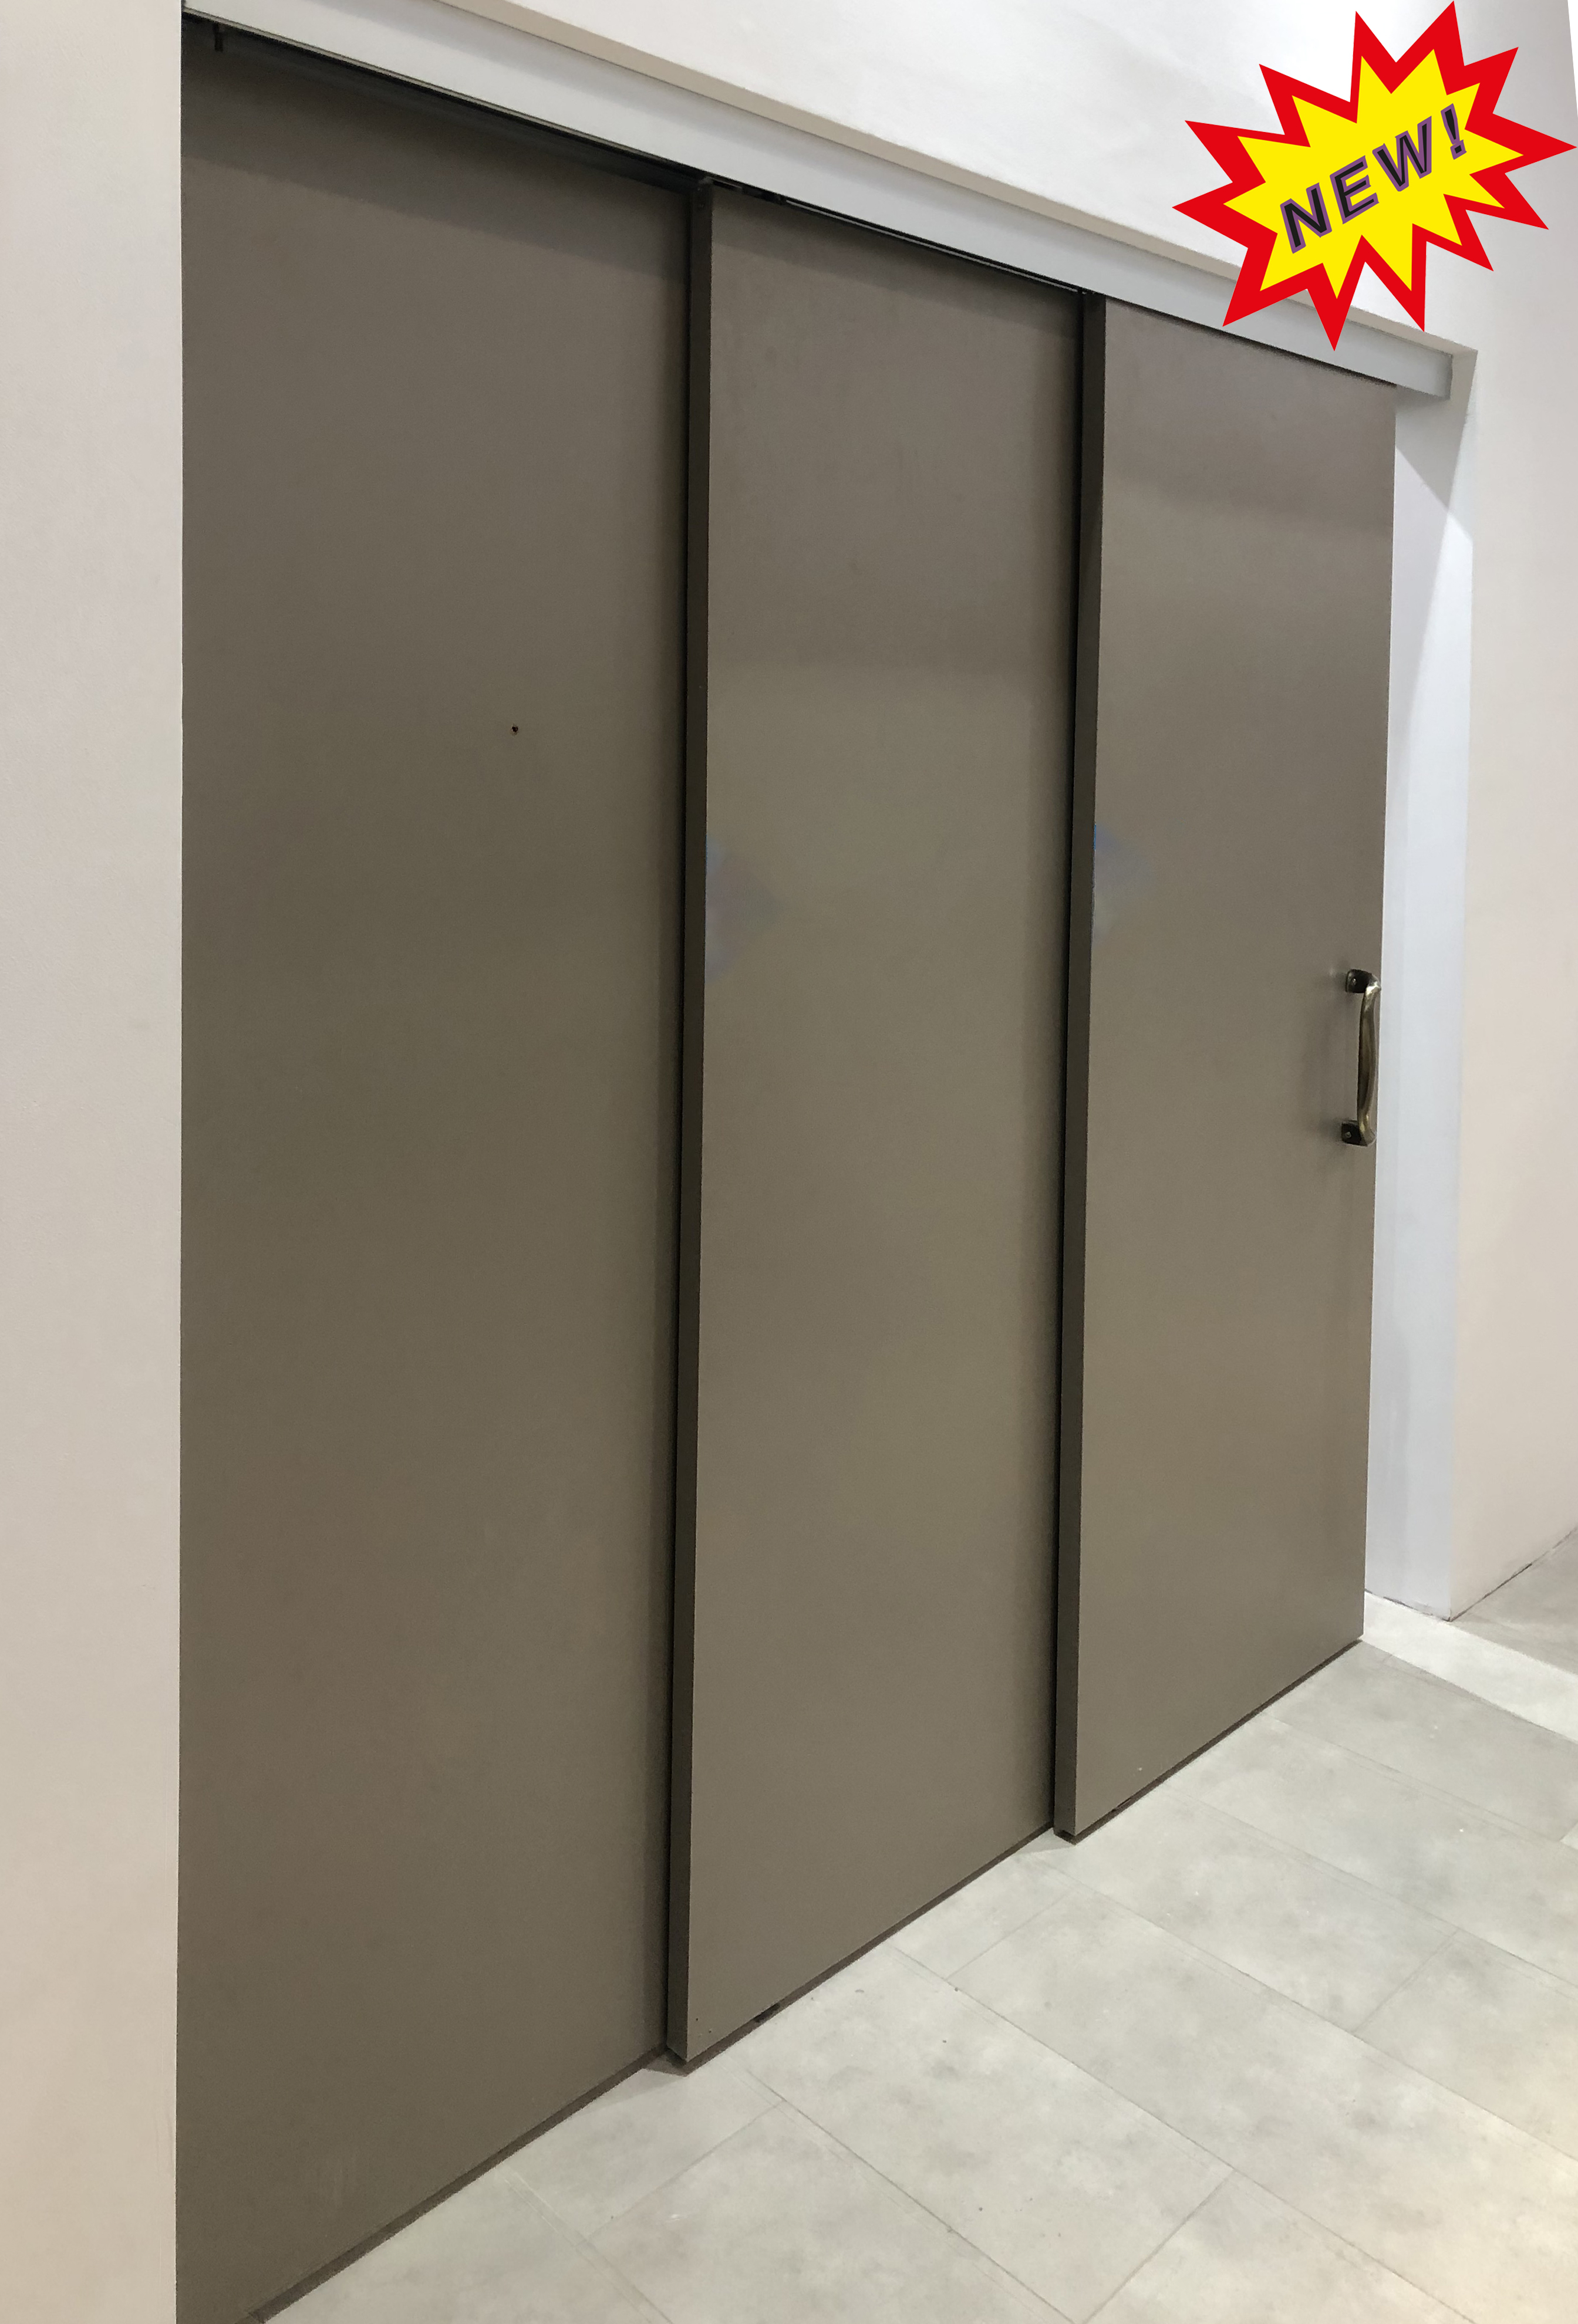 Linkage sliding door system [2+1], 60kgs/door with 2-way damper